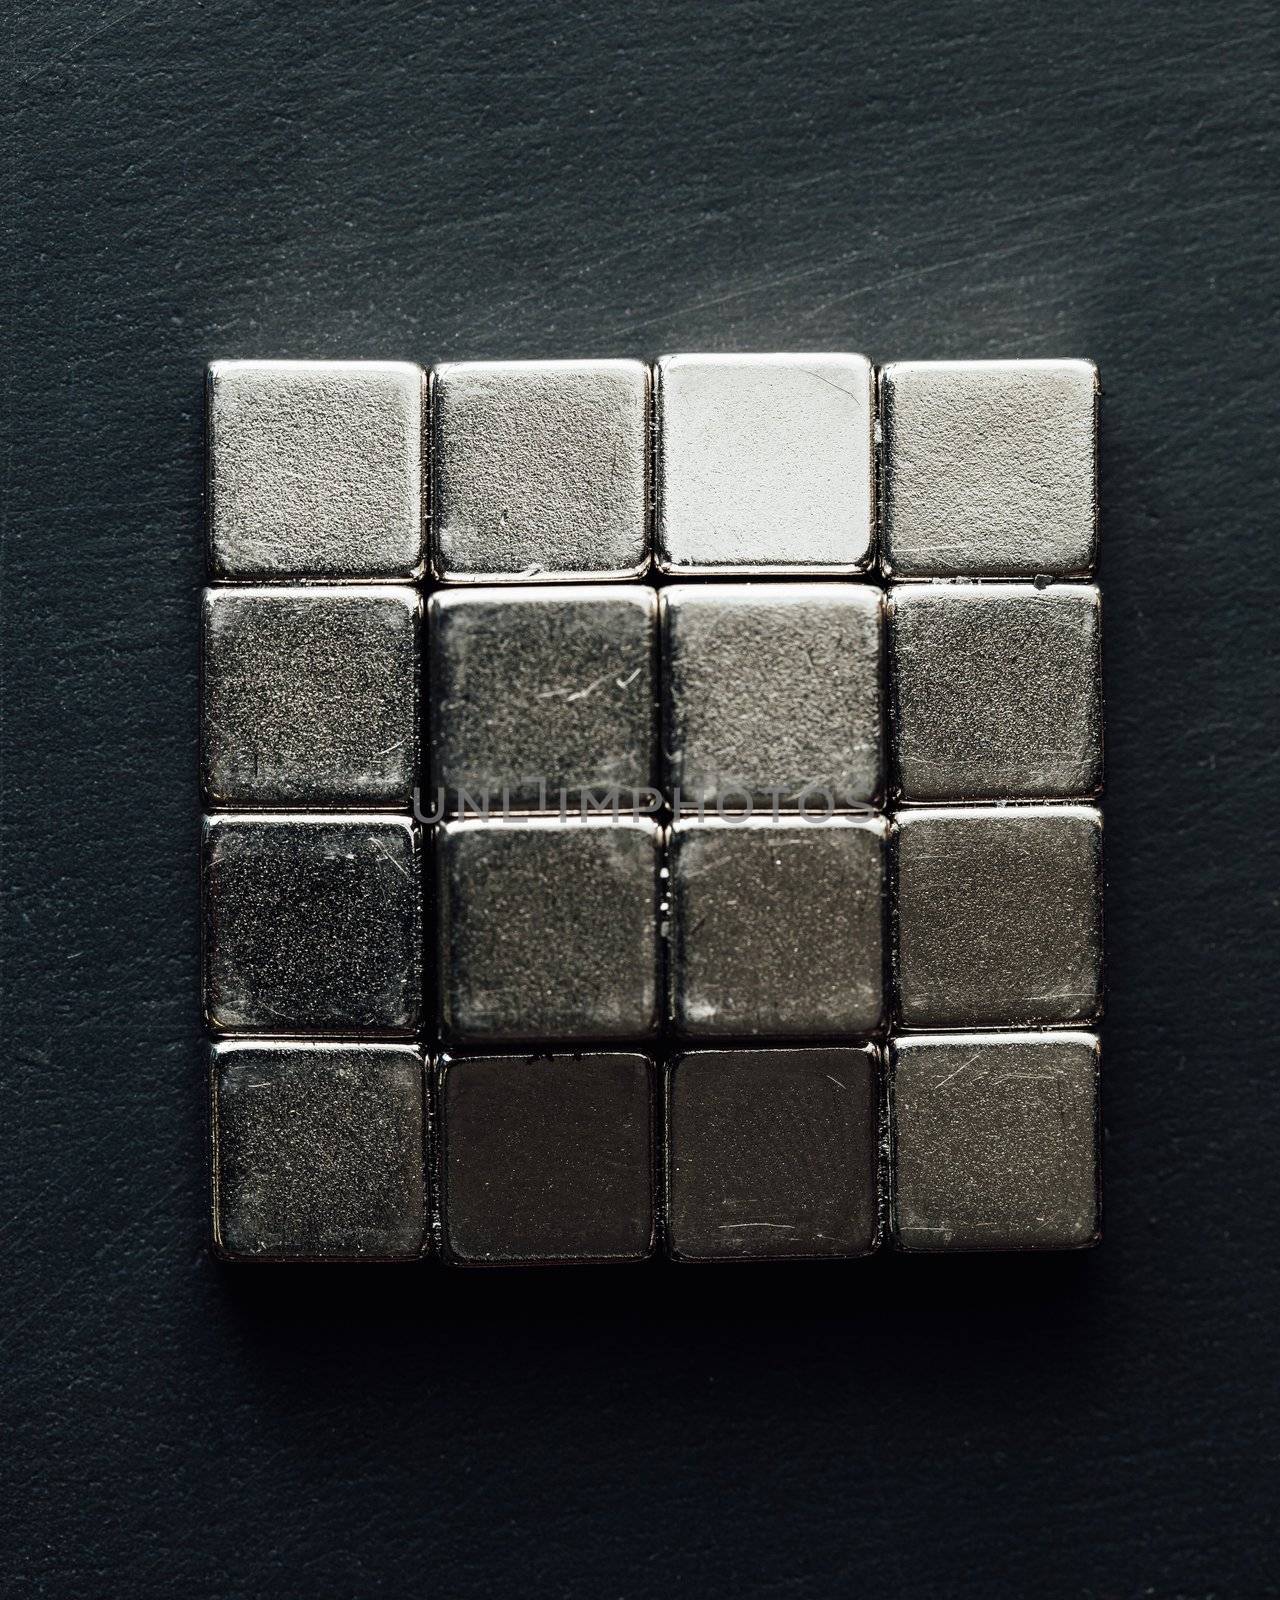 neodymium magnets squares, black background by nikkytok